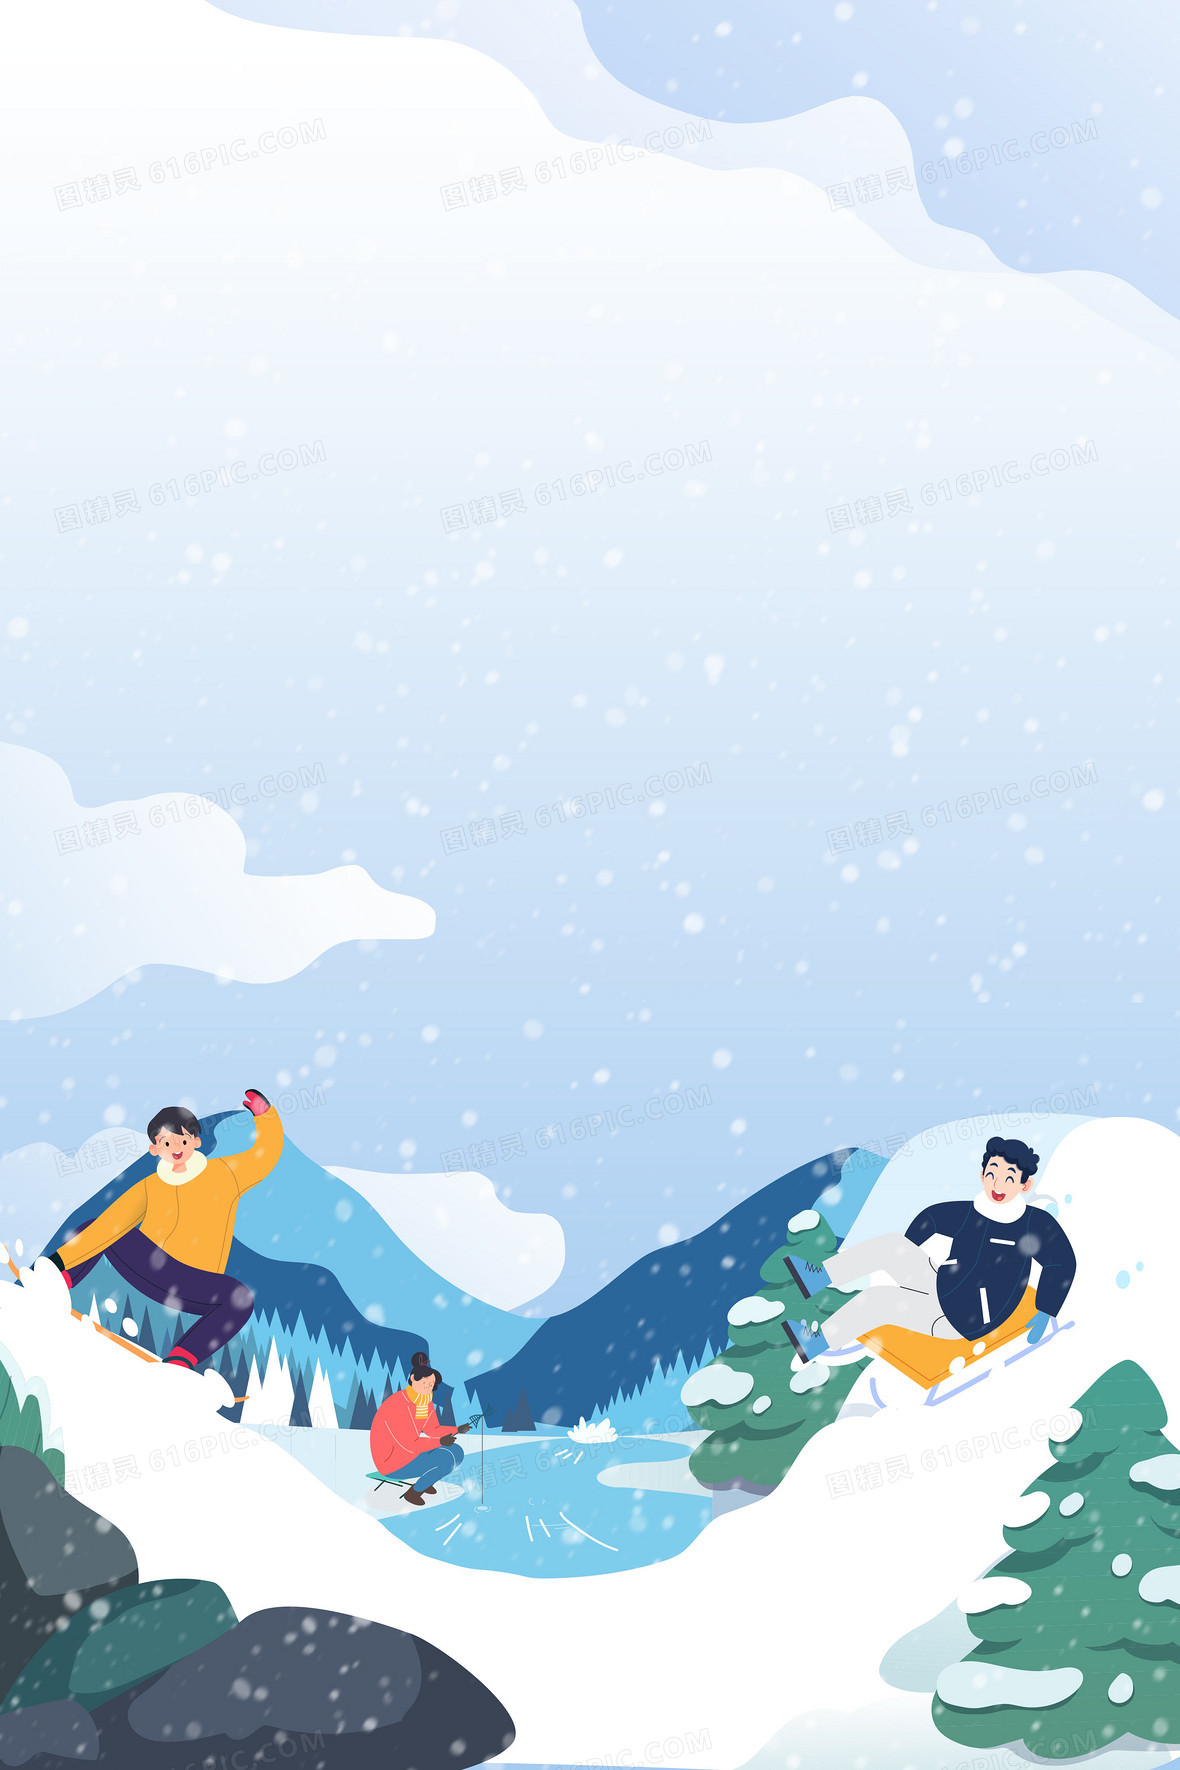 手绘卡通冰雪运动滑雪背景